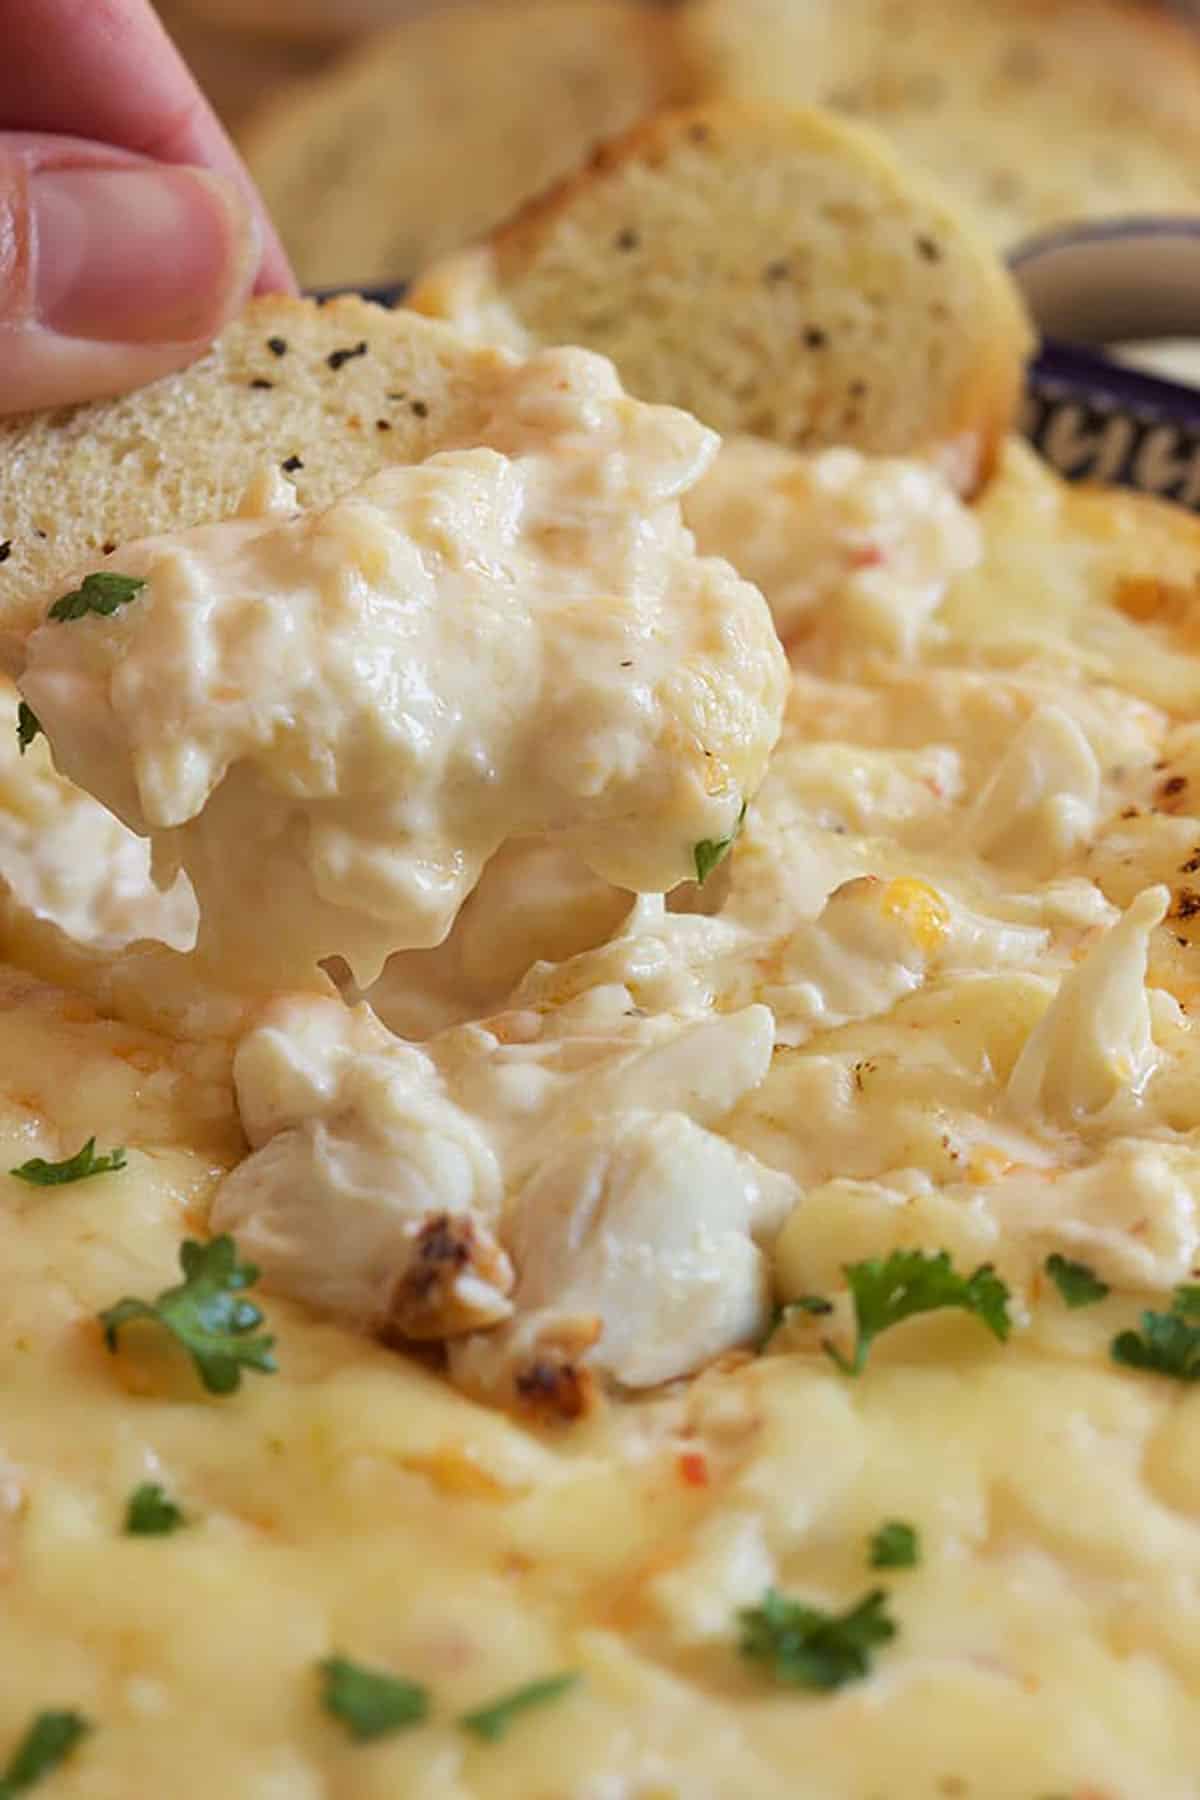 10 Best Hot Imitation Crab Dip Recipes